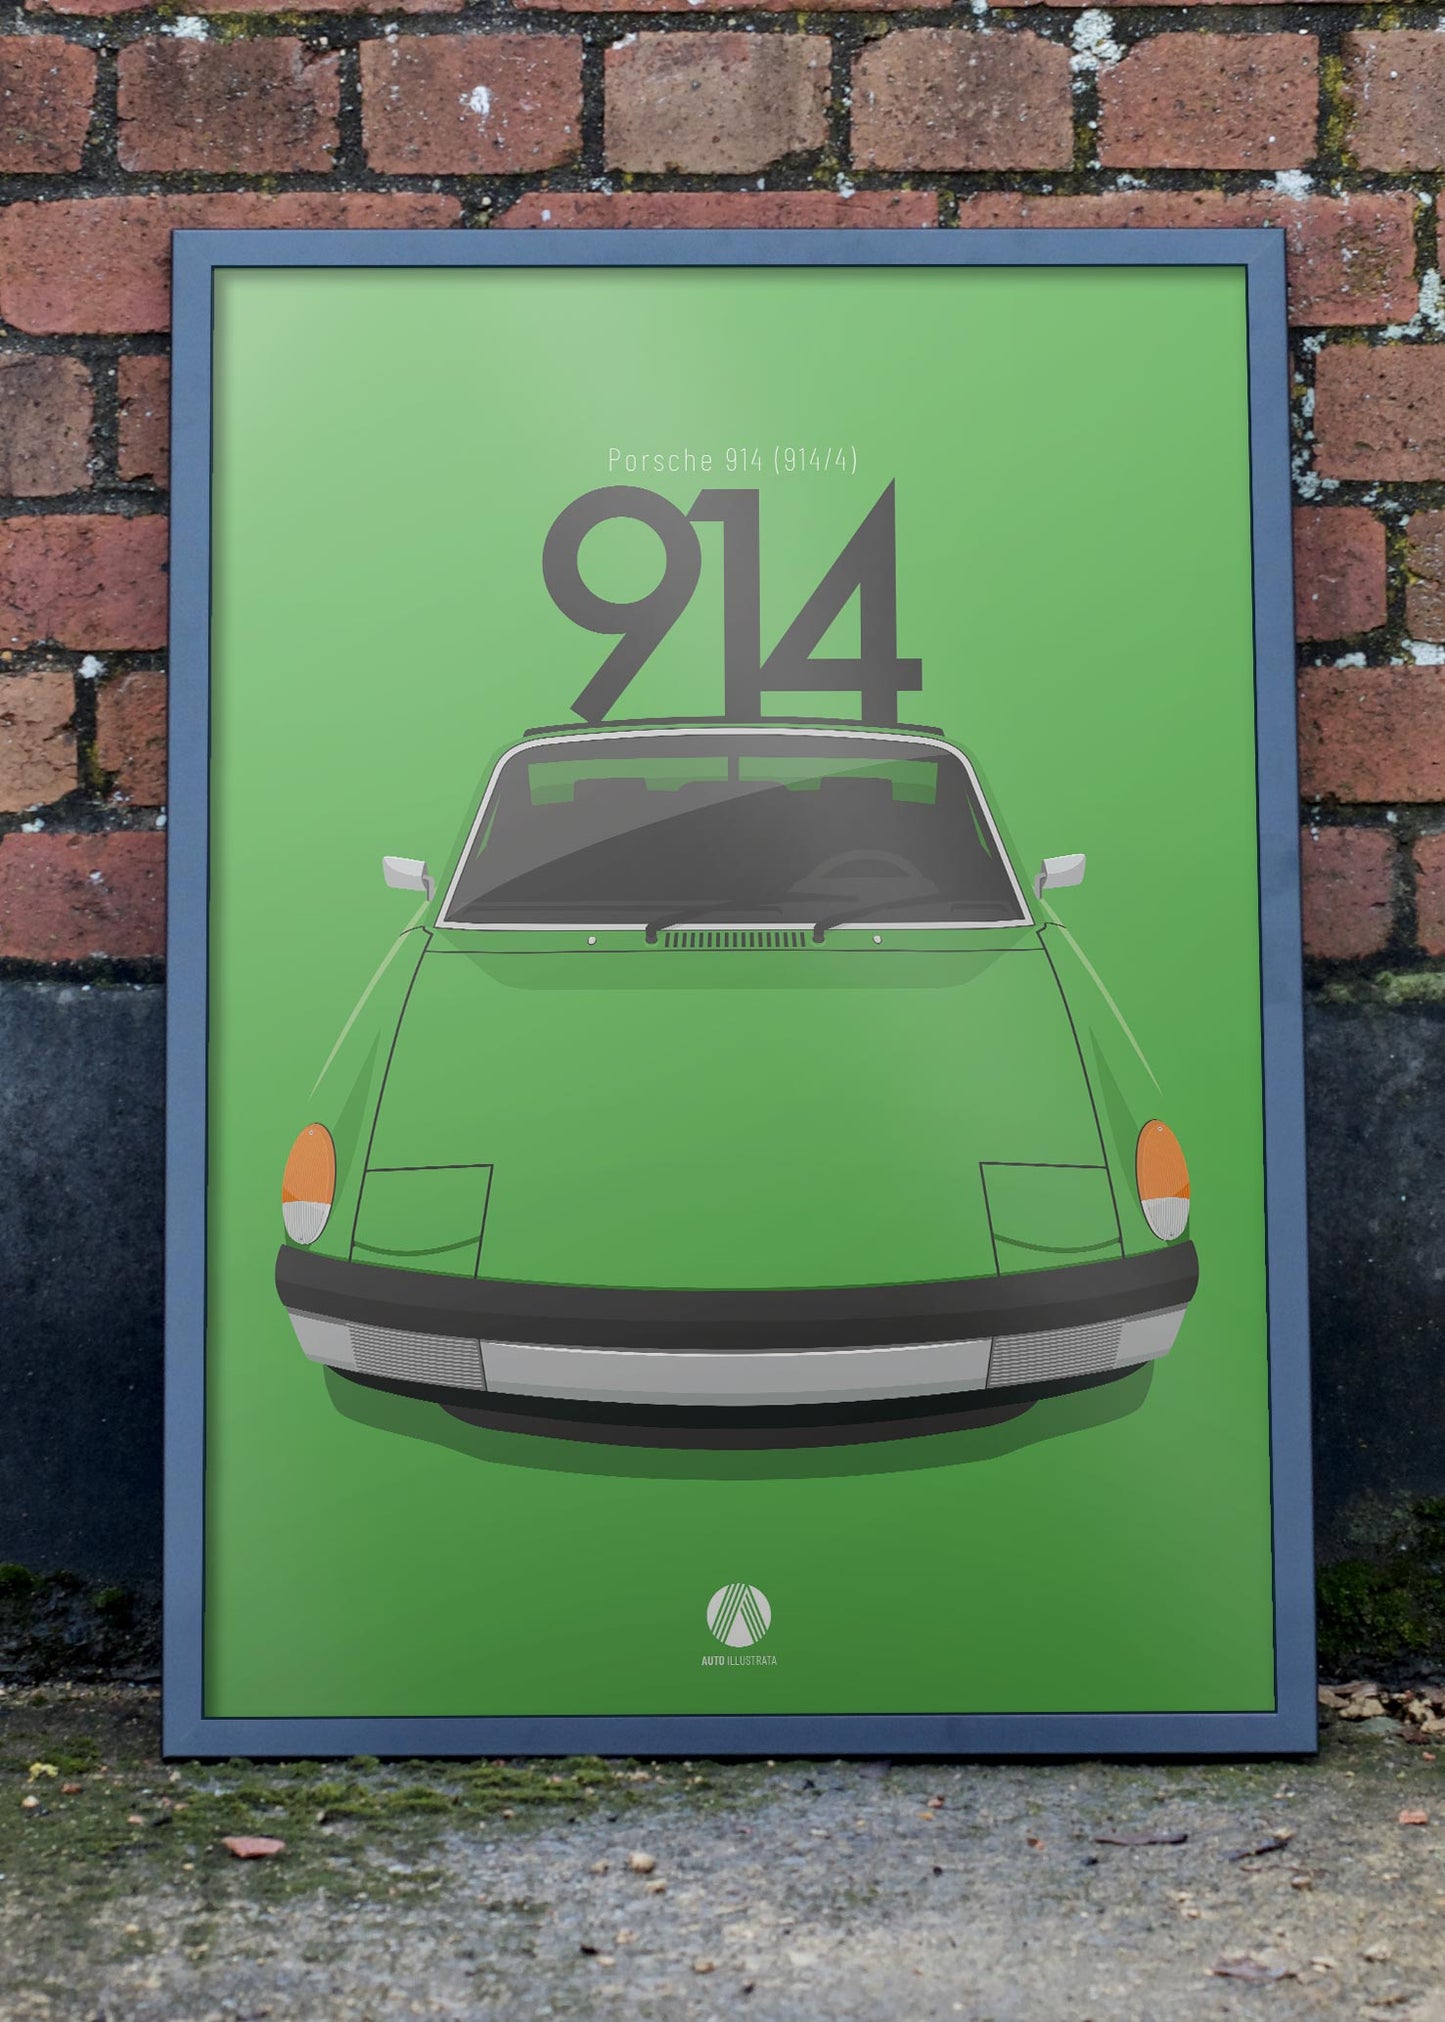 1970 Porsche 914 Zambezi Green - poster print